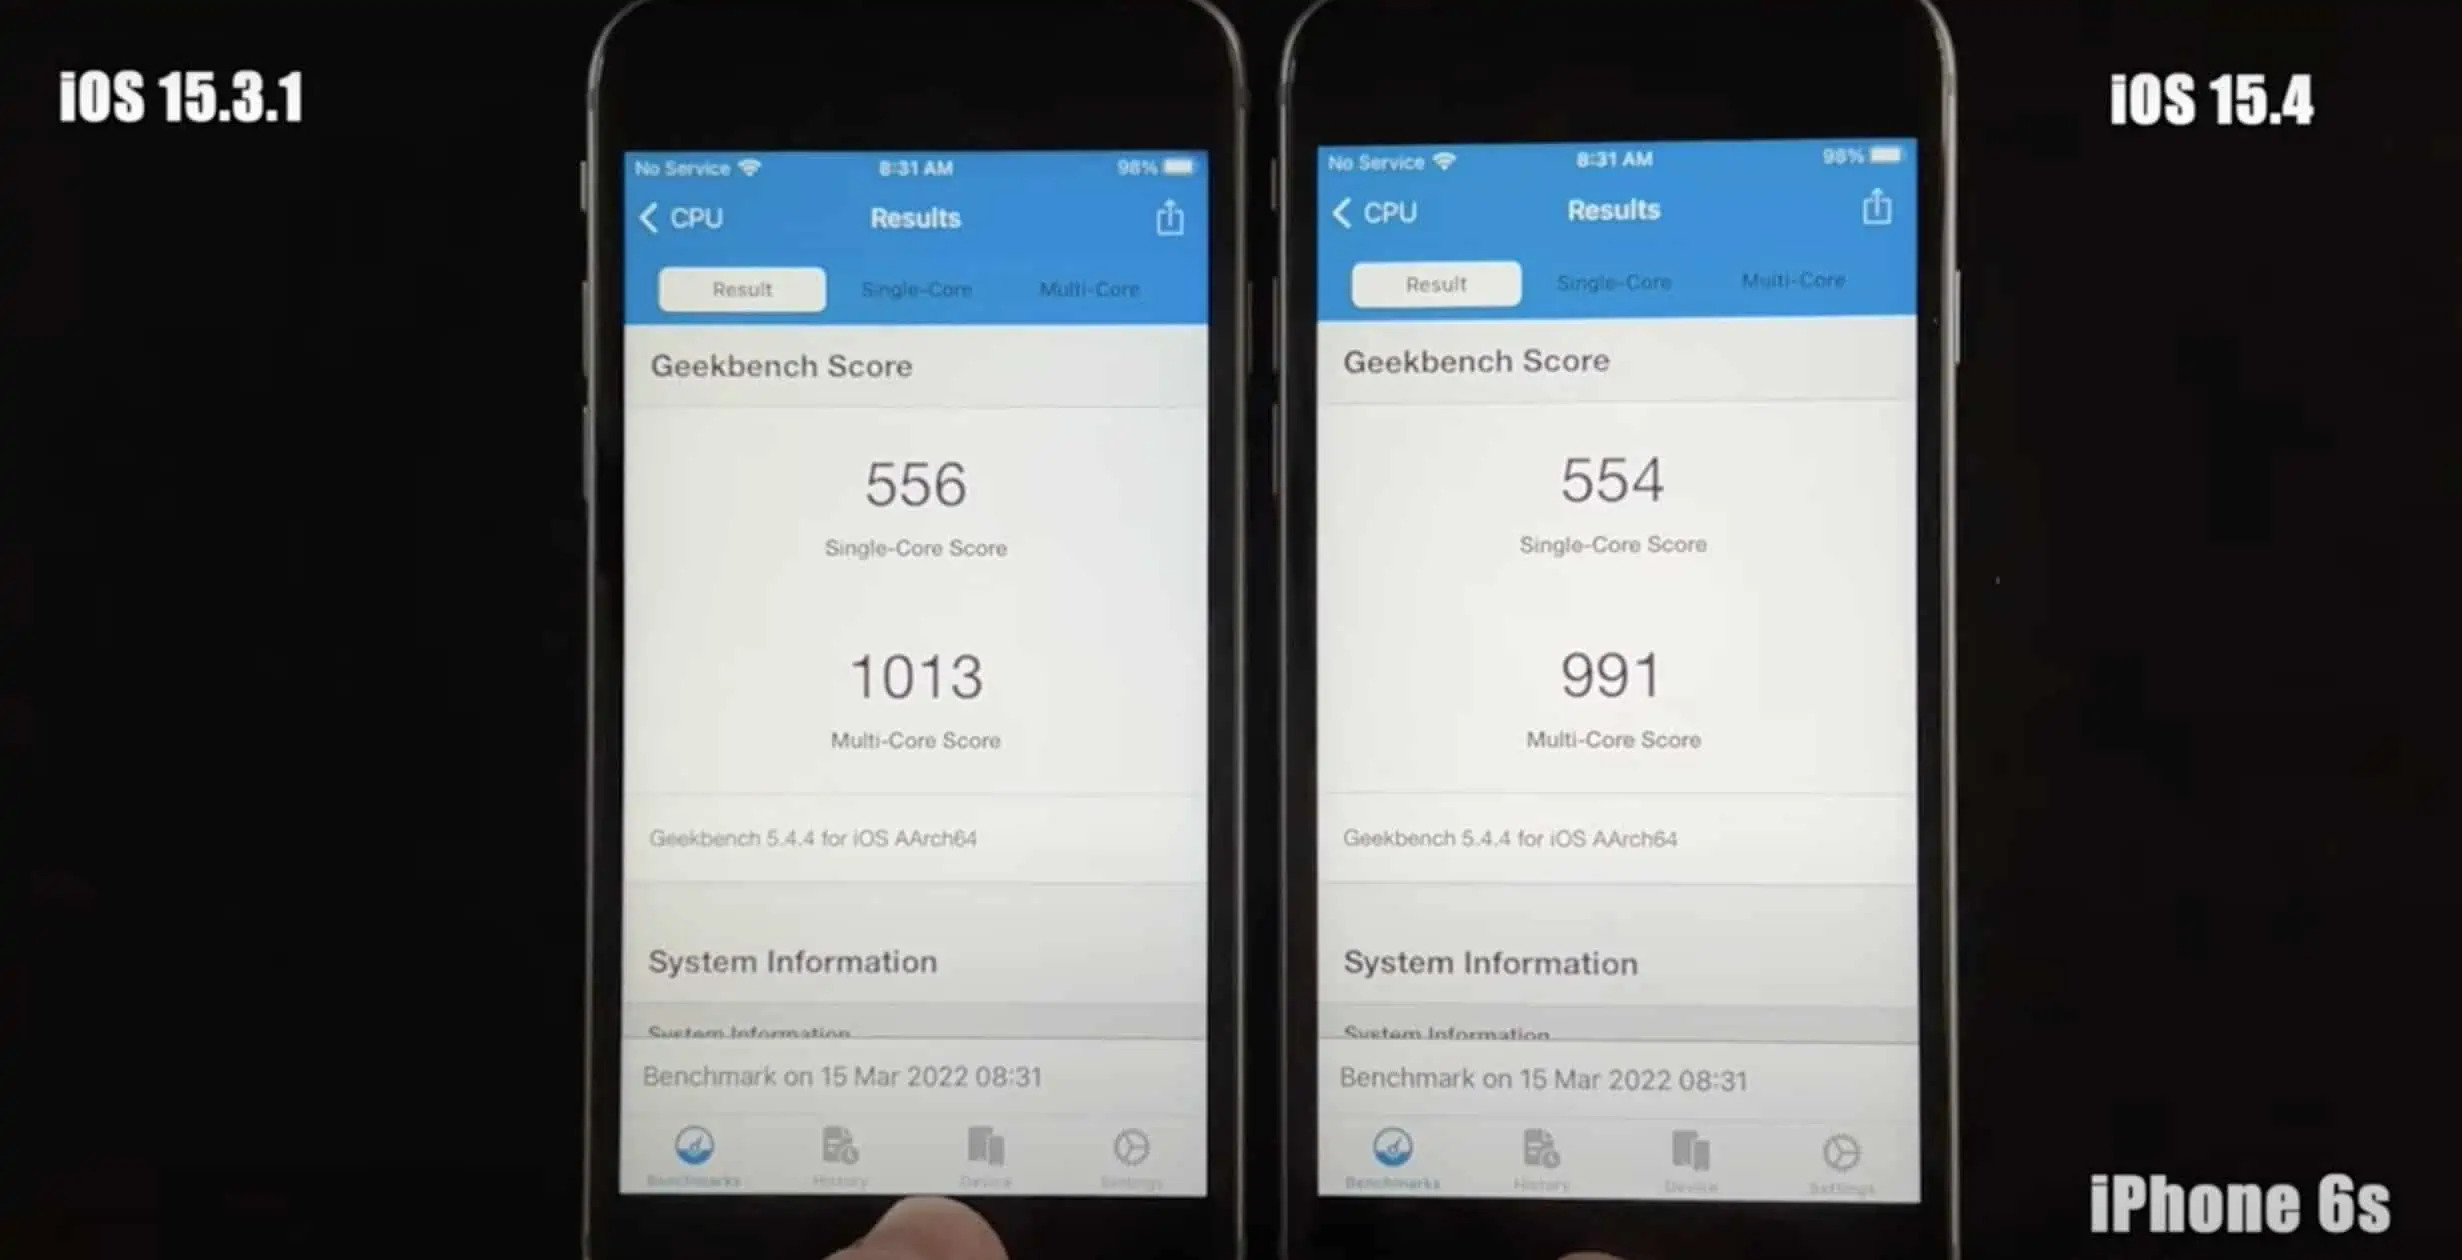 多款 iPhone升级 iOS 15.4 后跑分实测速度下降？